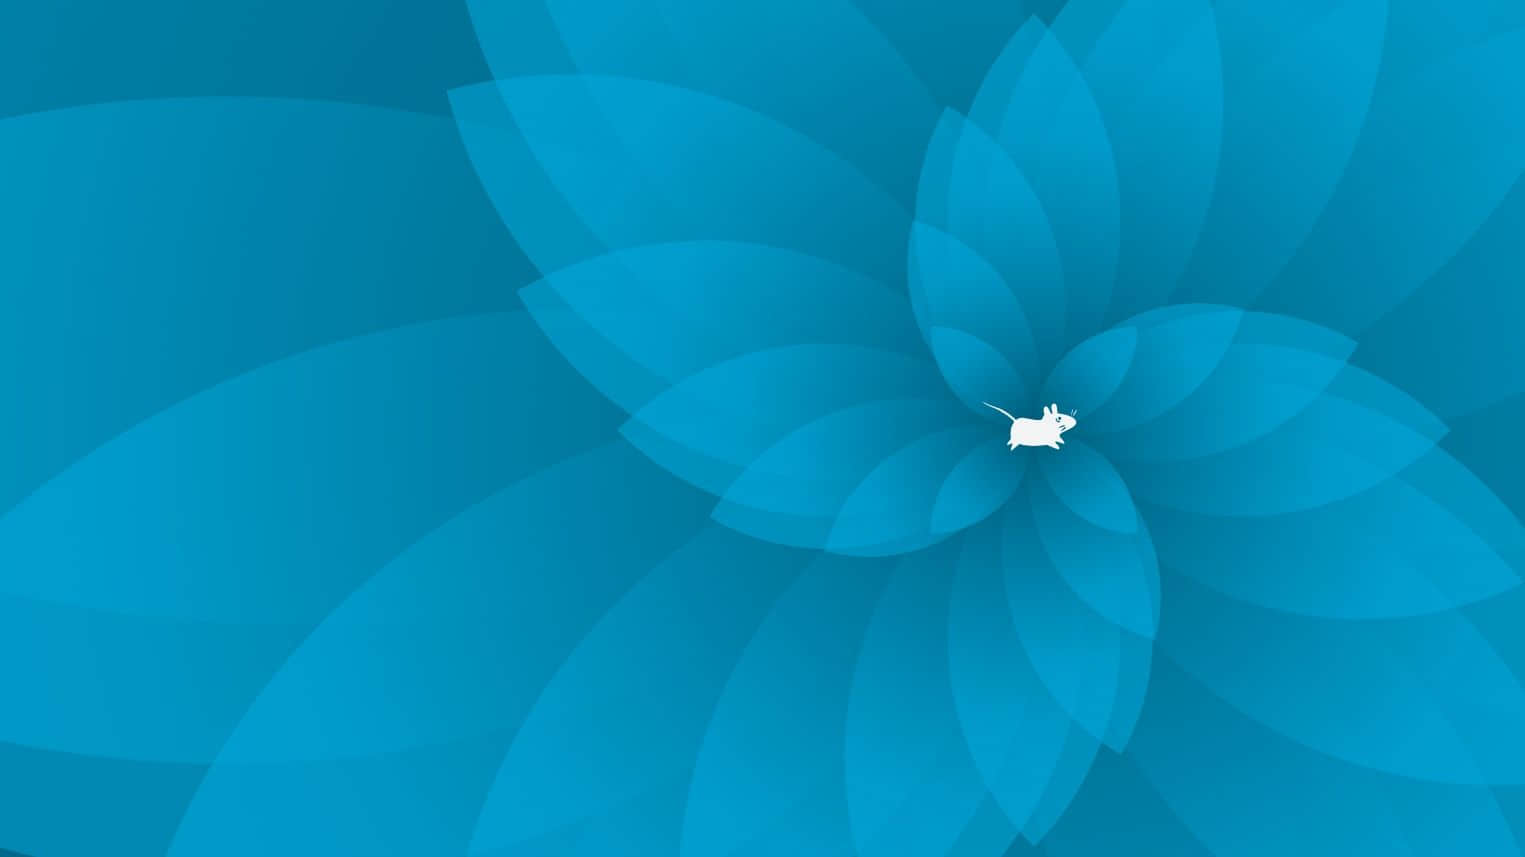 Xfce 4.18 新壁纸集